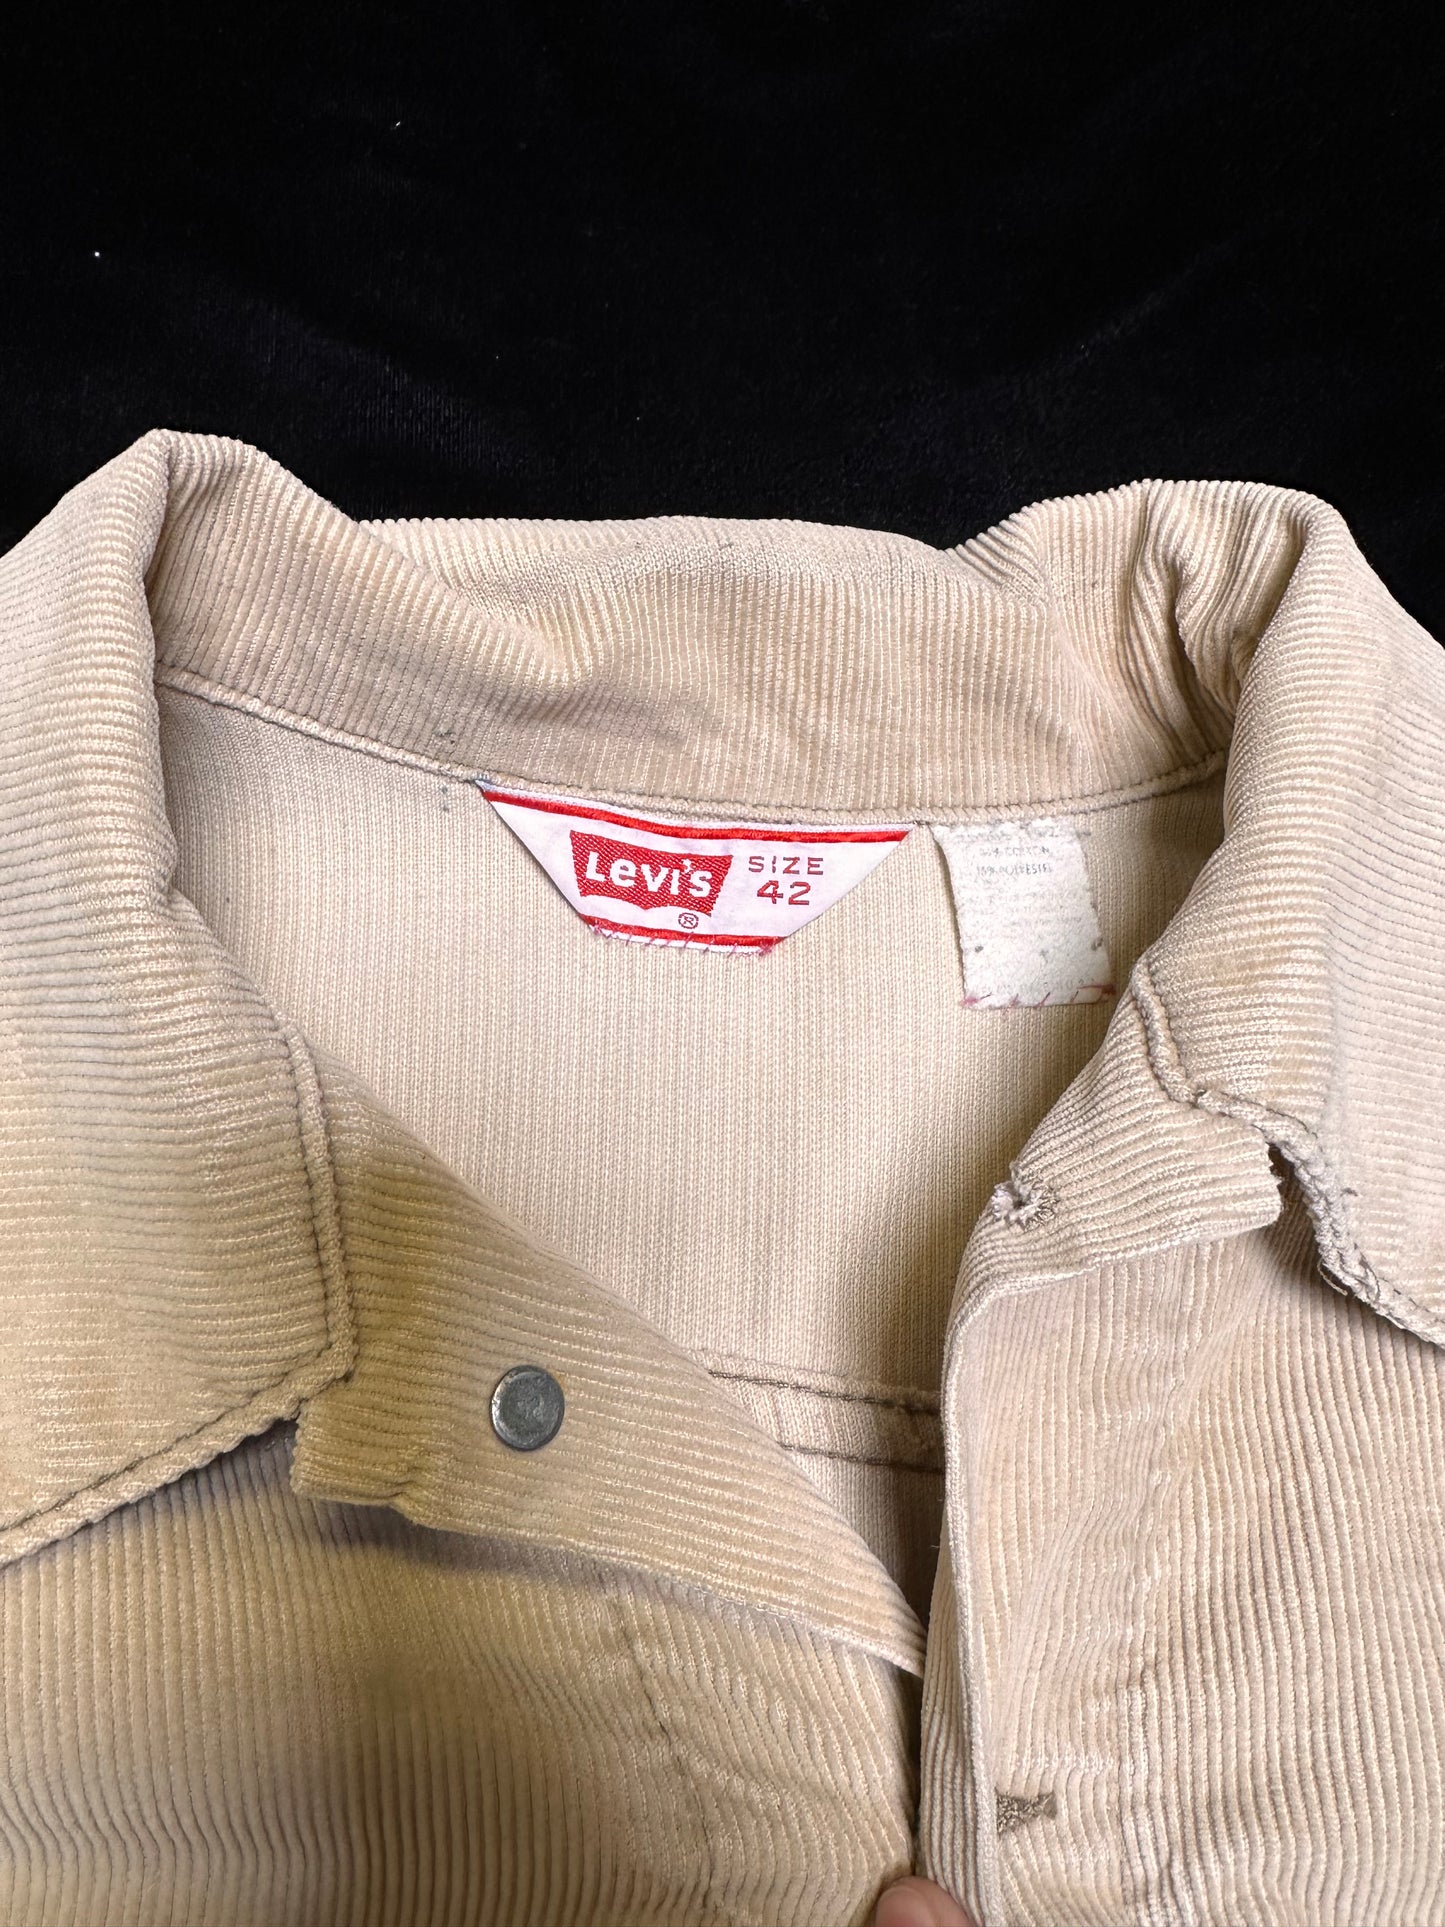 Vintage Levi’s Trucker jacket